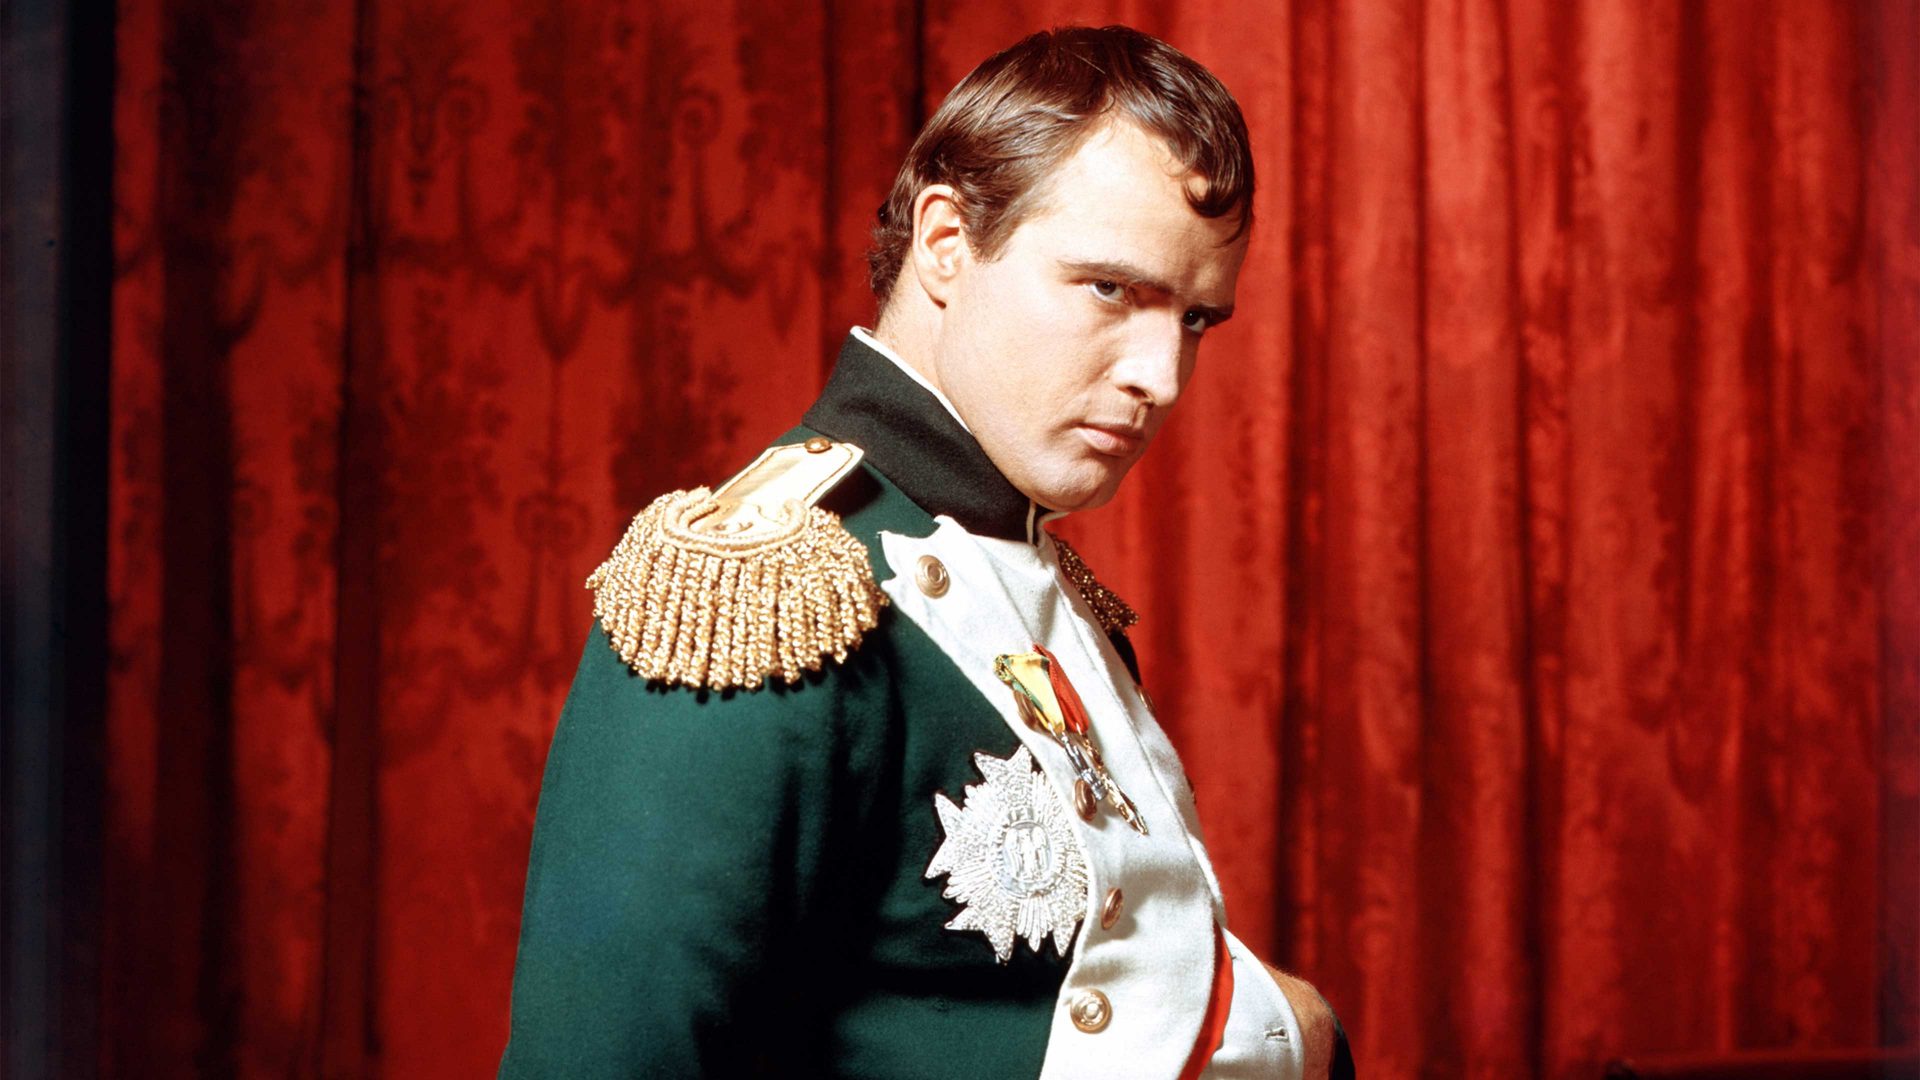 Marlon Brando as Napoleon Bonaparte 
in Désirée, 1954. Photo: Silver Screen 
Collection